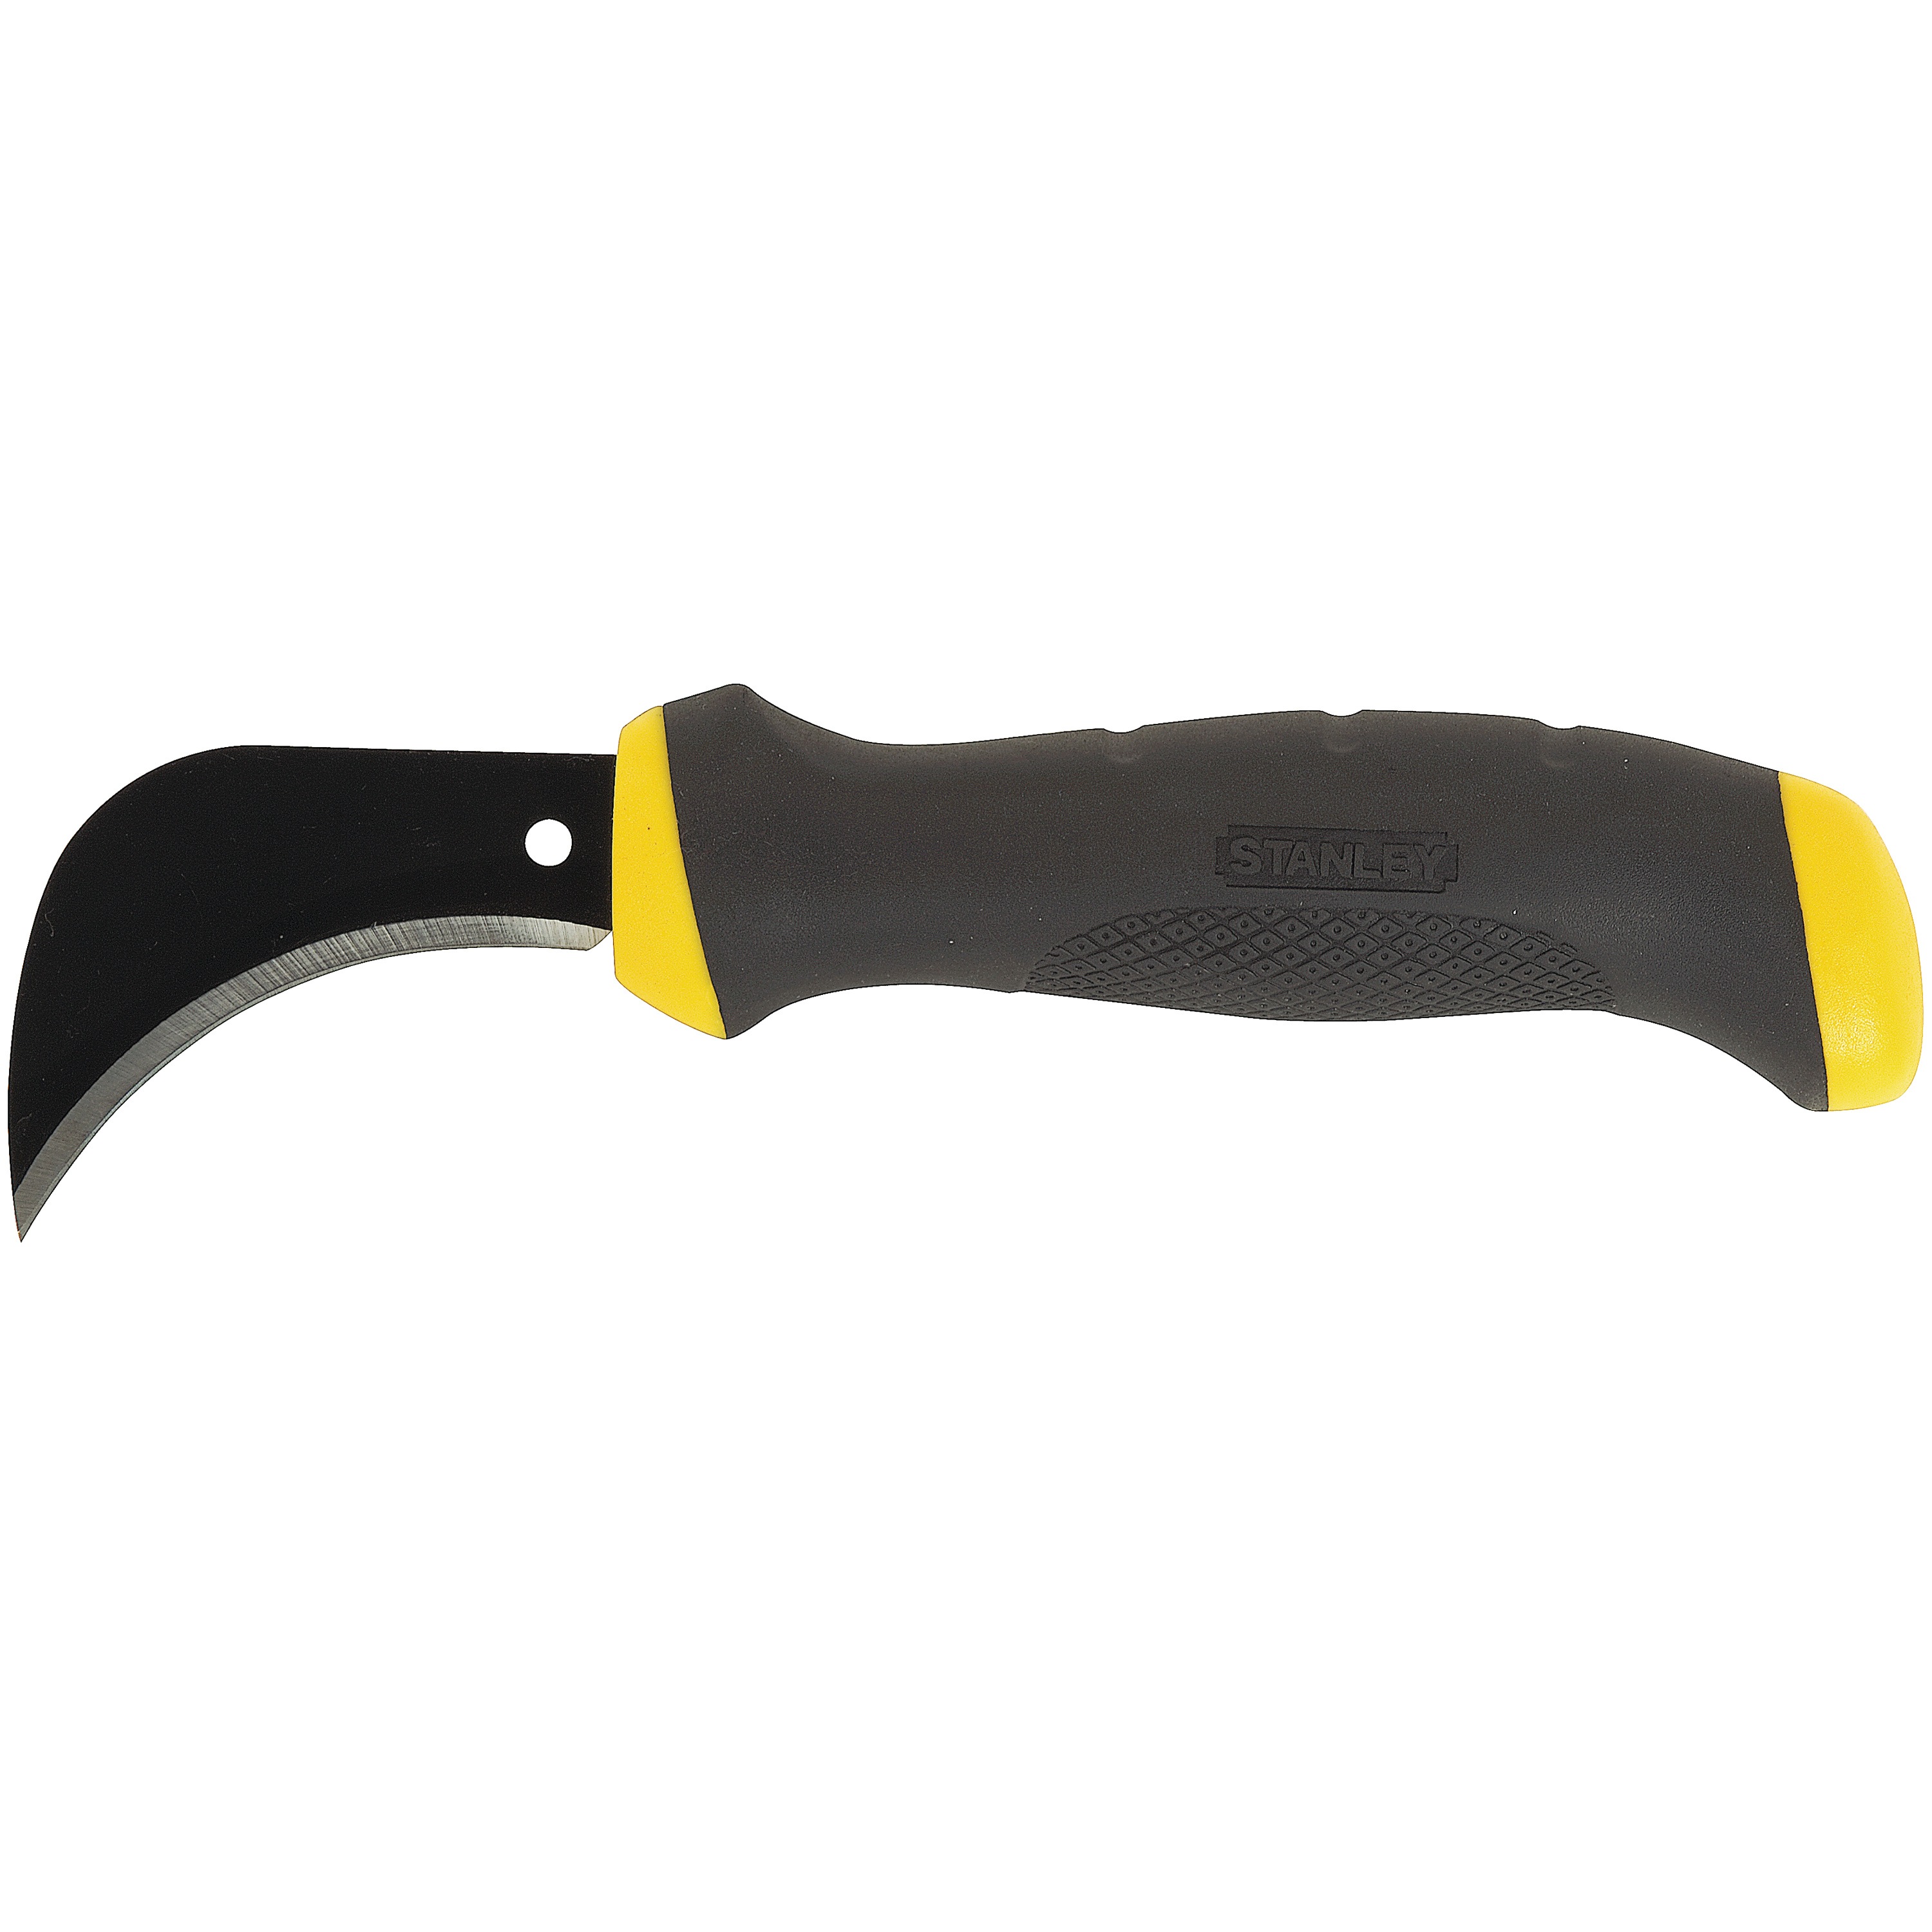 Stanley Tools - 512 in FATMAX Hook Knife - 10-510